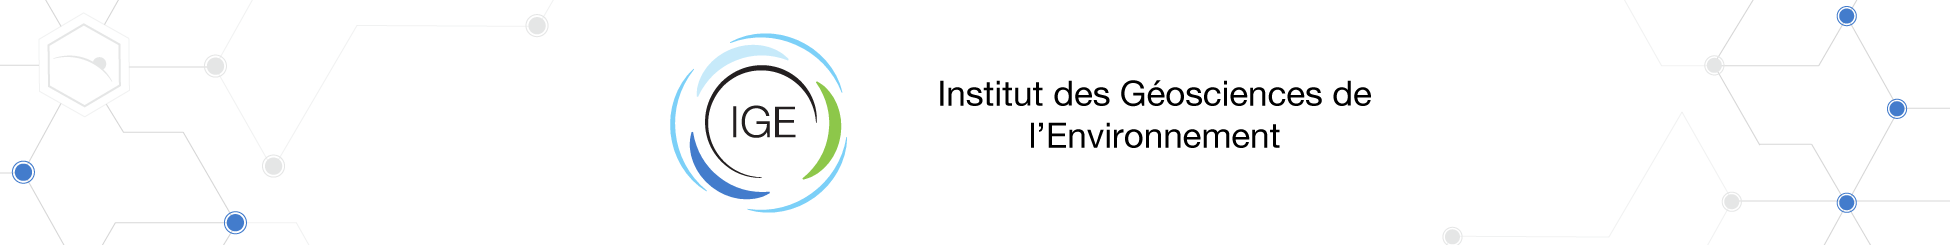 Institut des Géosciences de l’Environnement - UMR 5001